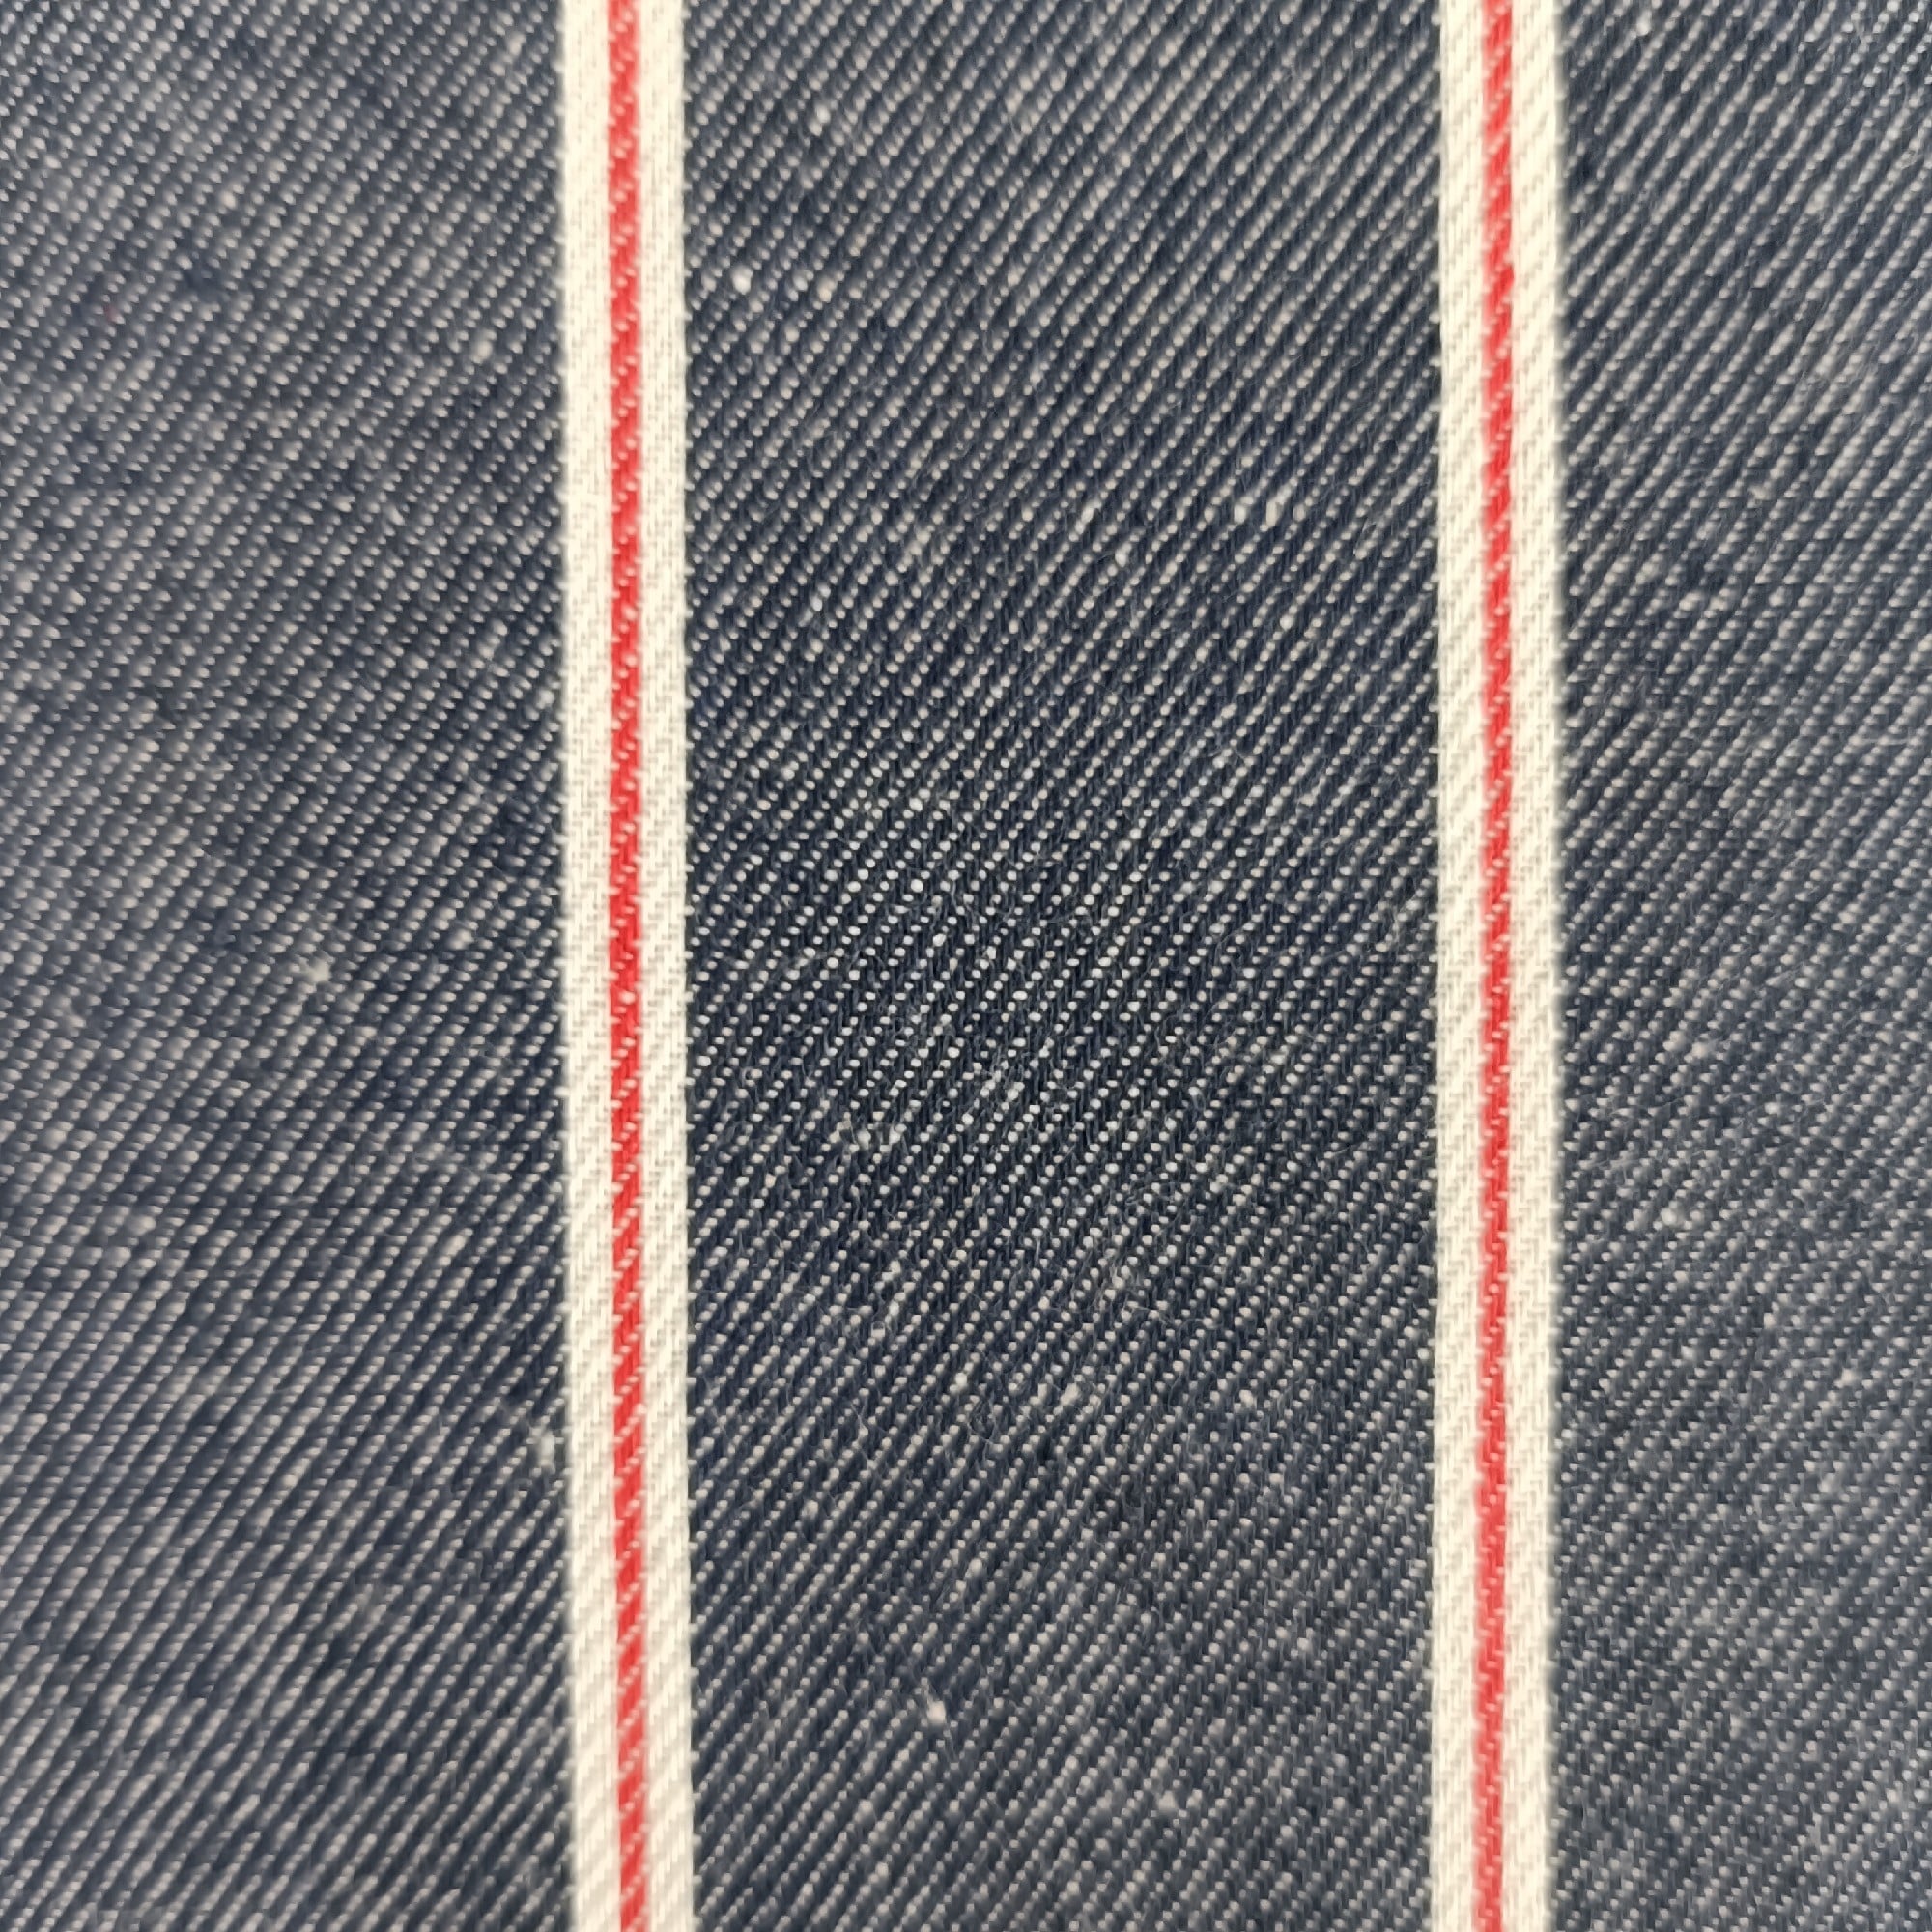 Buy Striped Denim Fabric - Lightweight Cotton - 145cm Wide Online ...